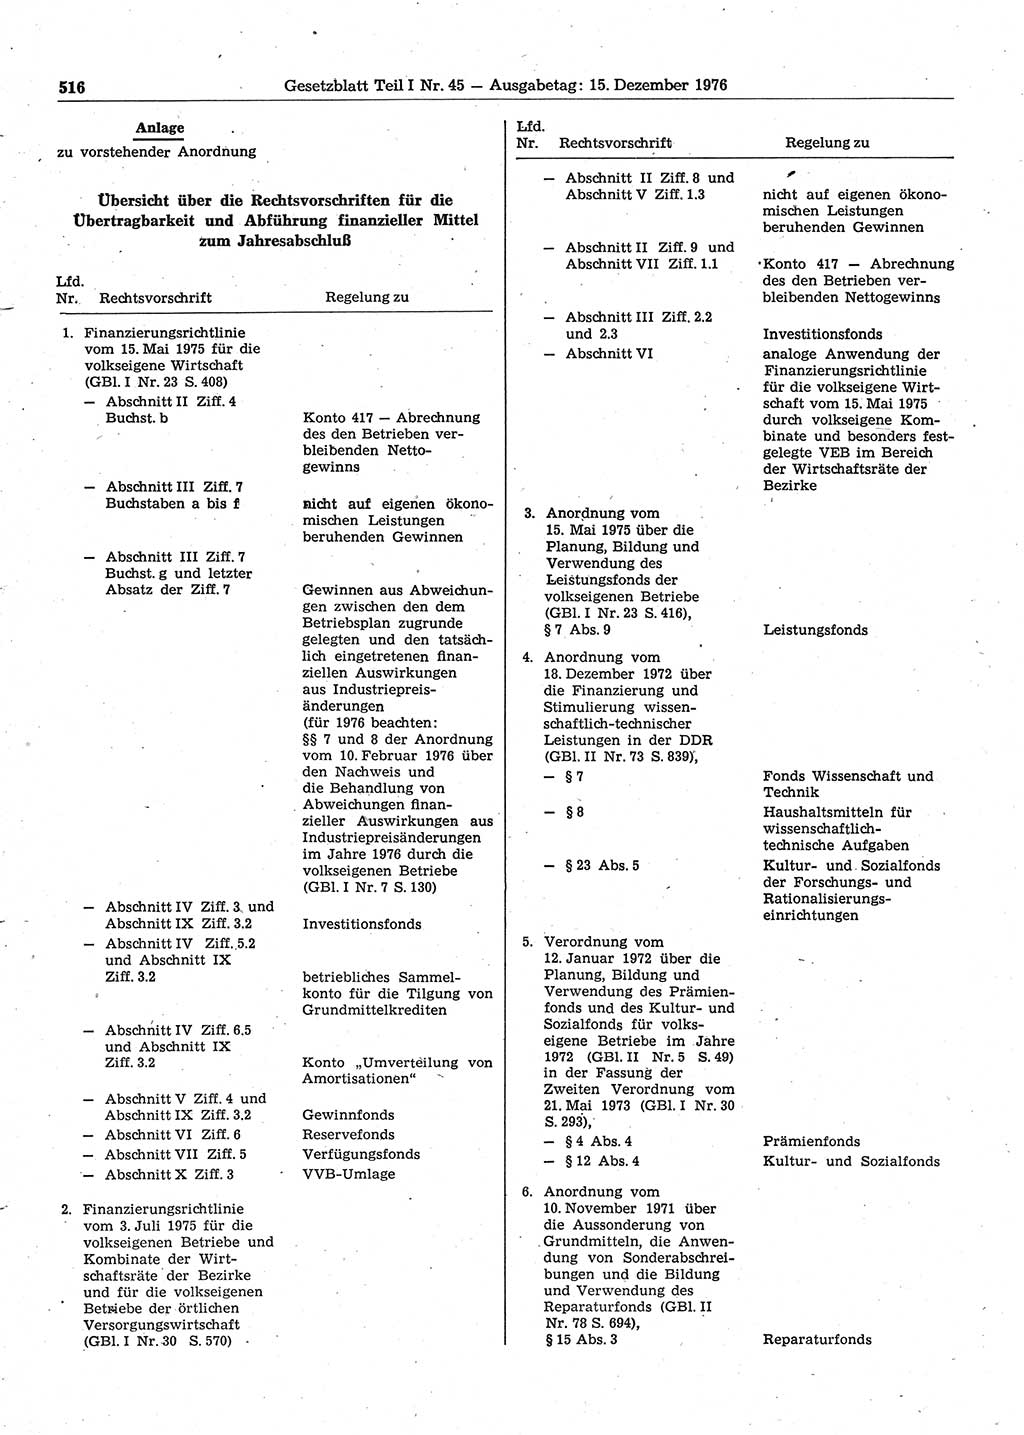 Gesetzblatt (GBl.) der Deutschen Demokratischen Republik (DDR) Teil Ⅰ 1976, Seite 516 (GBl. DDR Ⅰ 1976, S. 516)